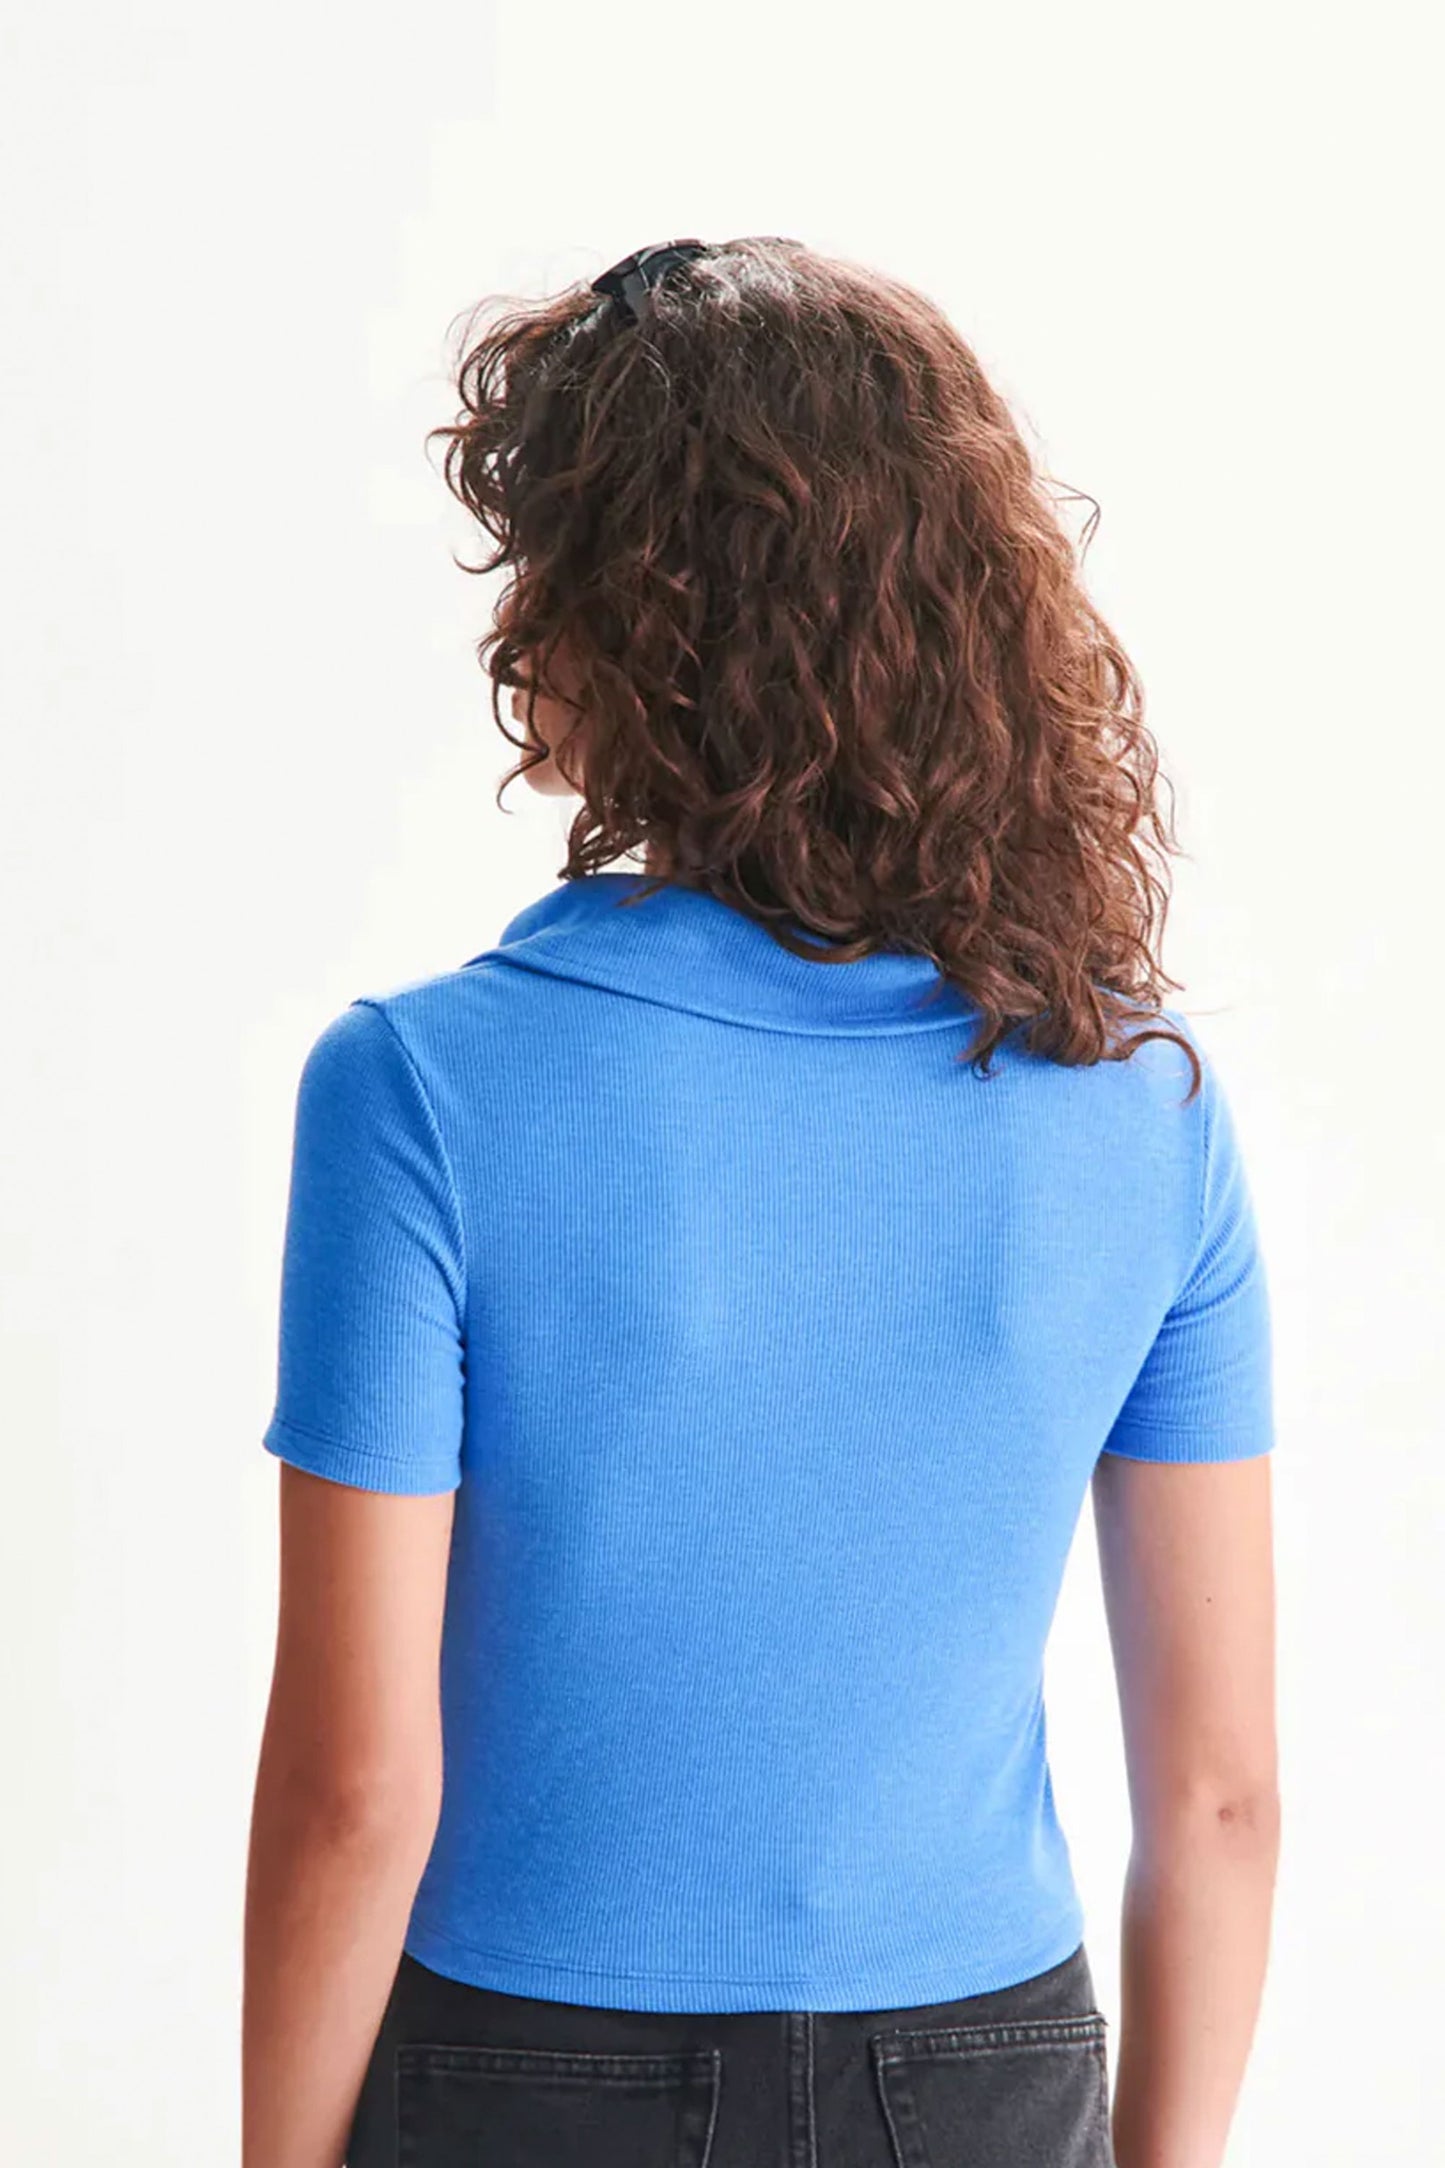 Pukas-Surf-Shop-woman-top-24colours-t-shirt-blue